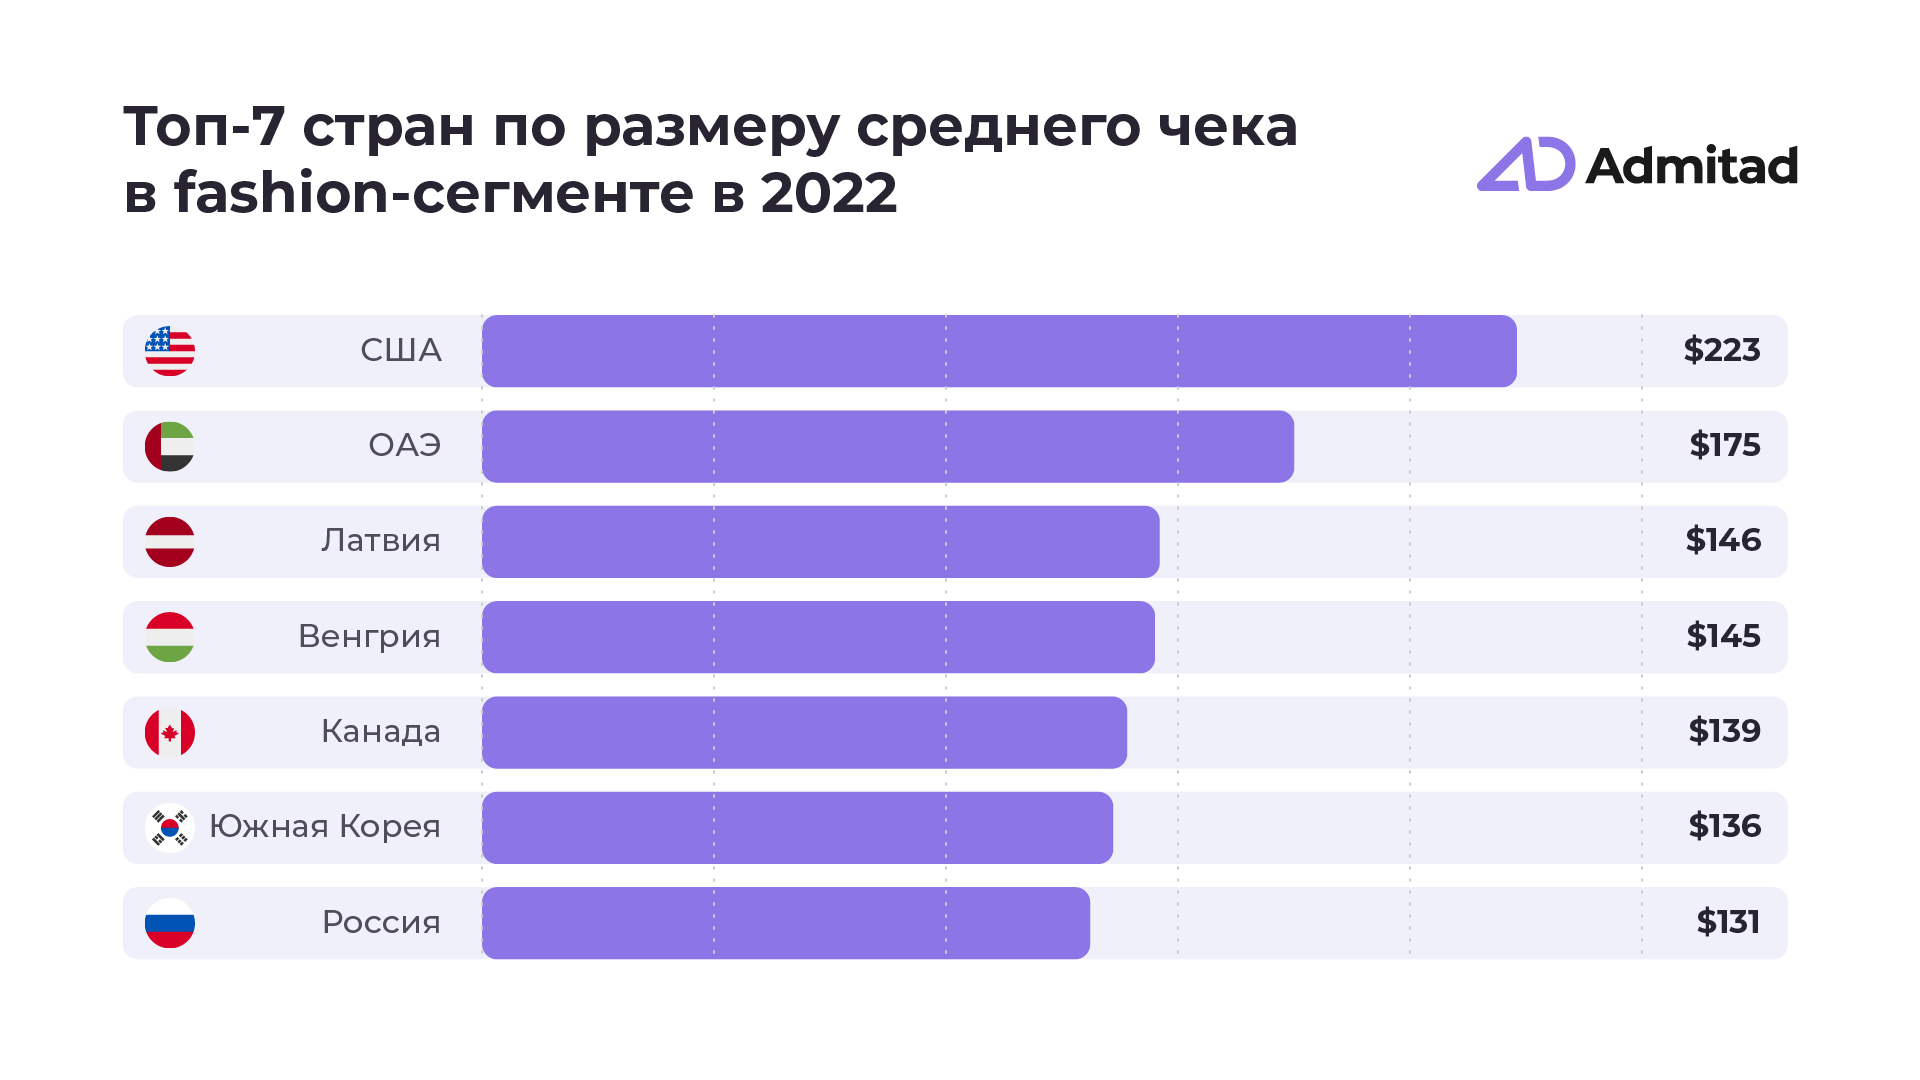 Российские фешен-заказы снизились на фоне мирового роста в 2022 году